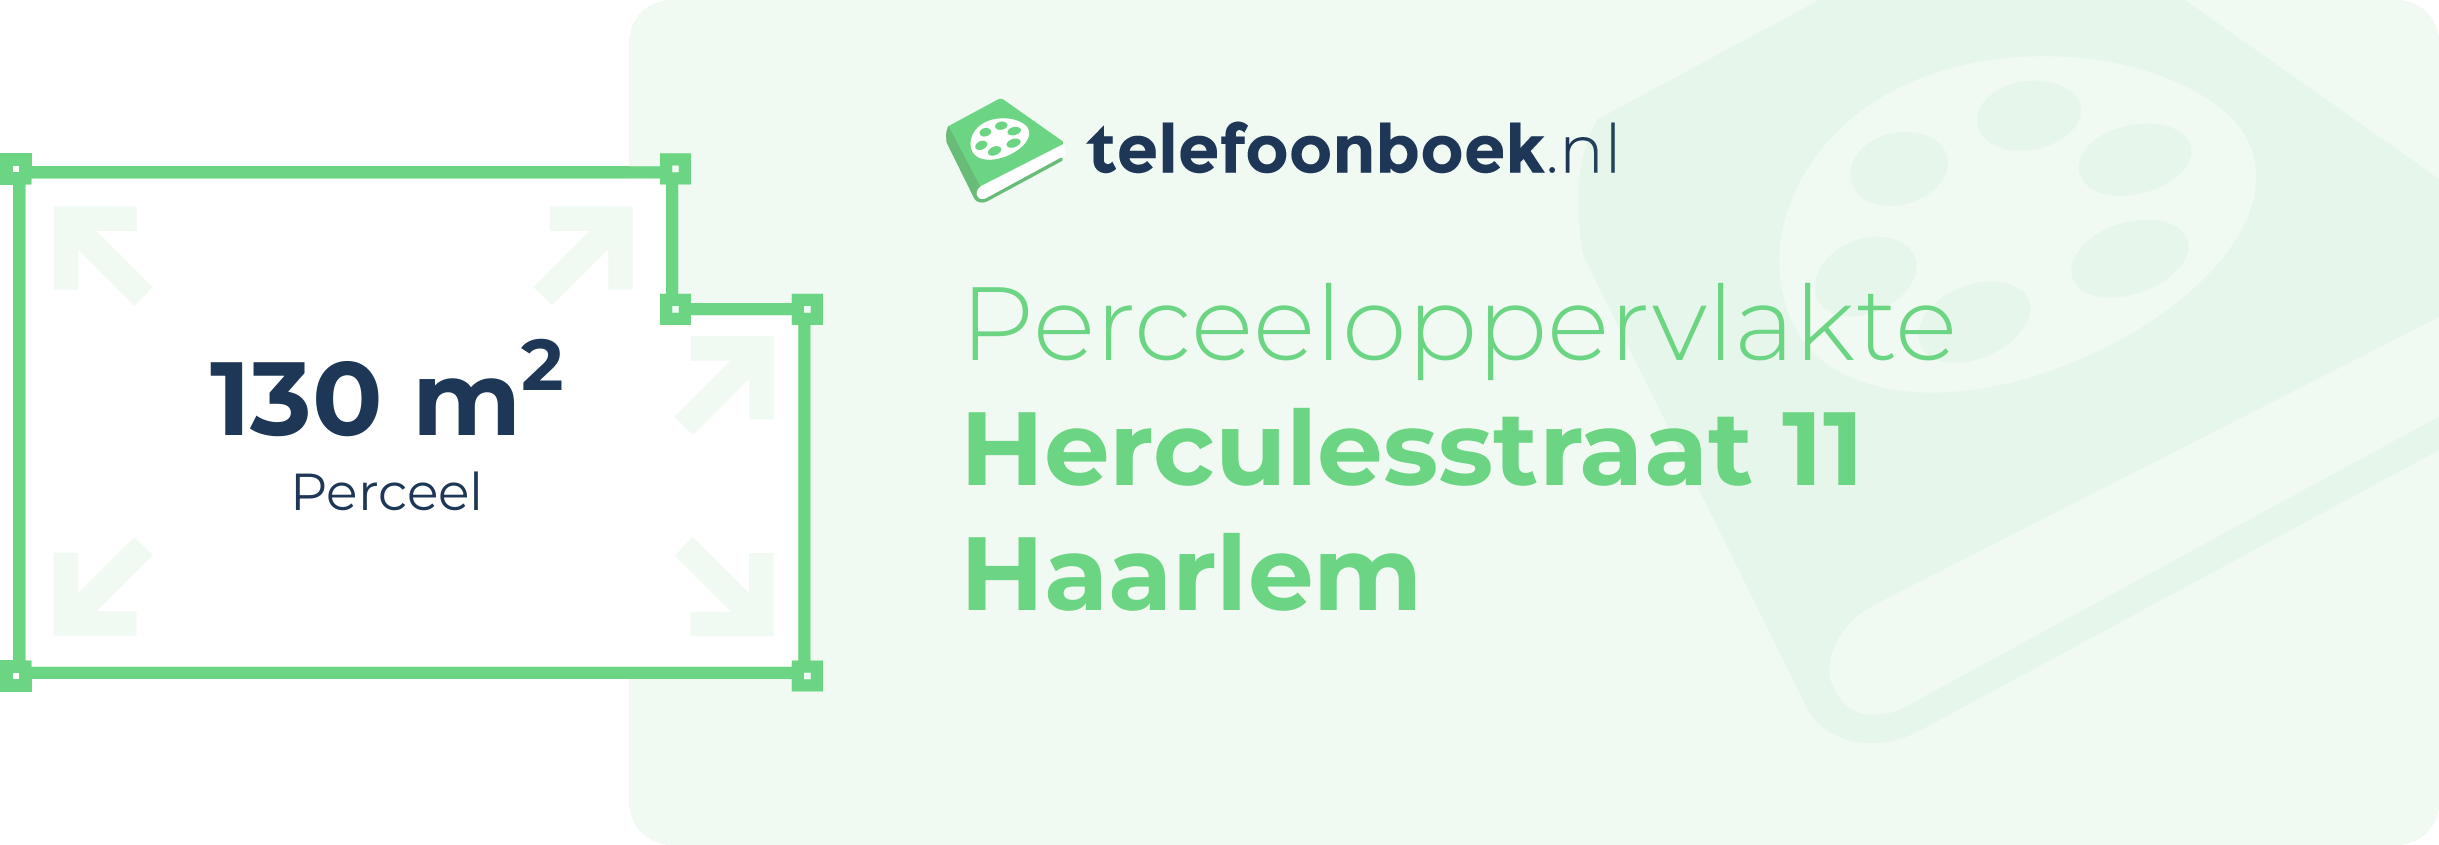 Perceeloppervlakte Herculesstraat 11 Haarlem